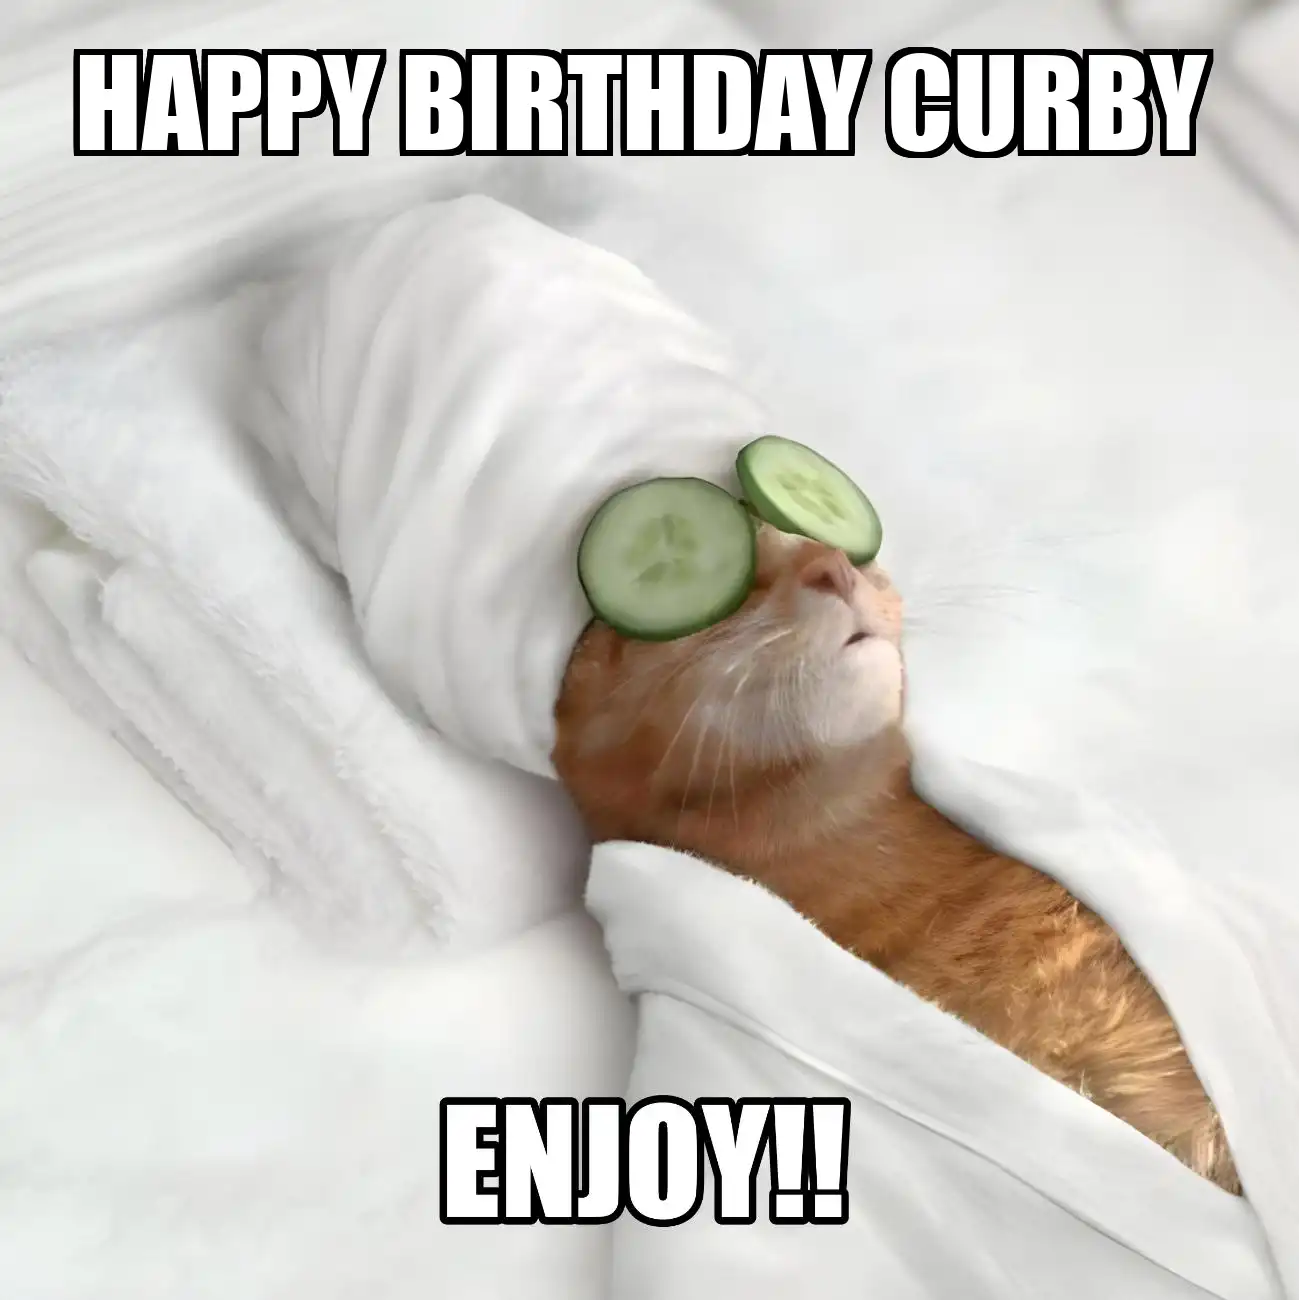 Happy Birthday Curby Enjoy Cat Meme